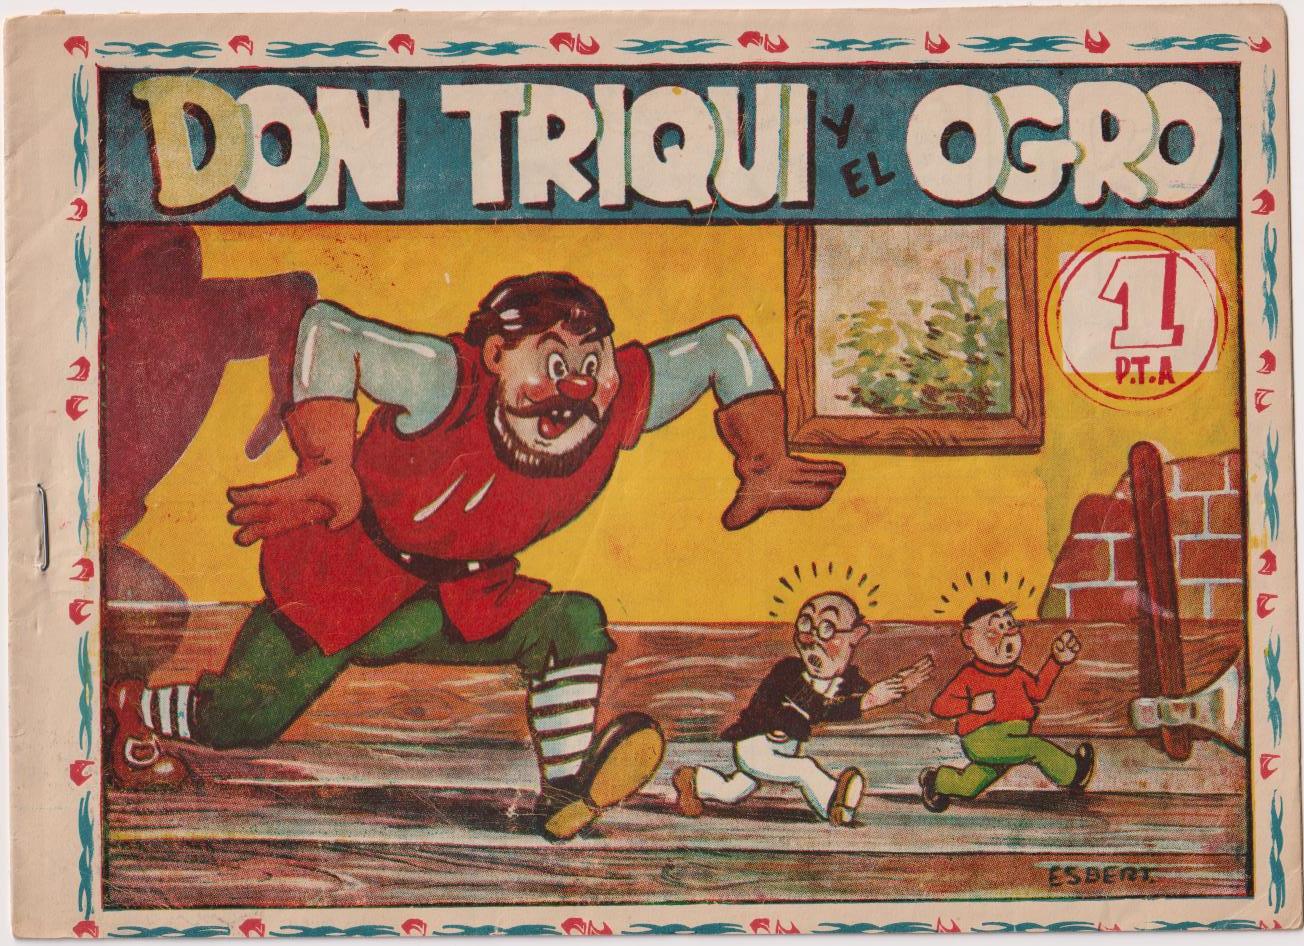 Aventuras de Don Triqui nº 69. El Ogro. Ameller 1950. RARO